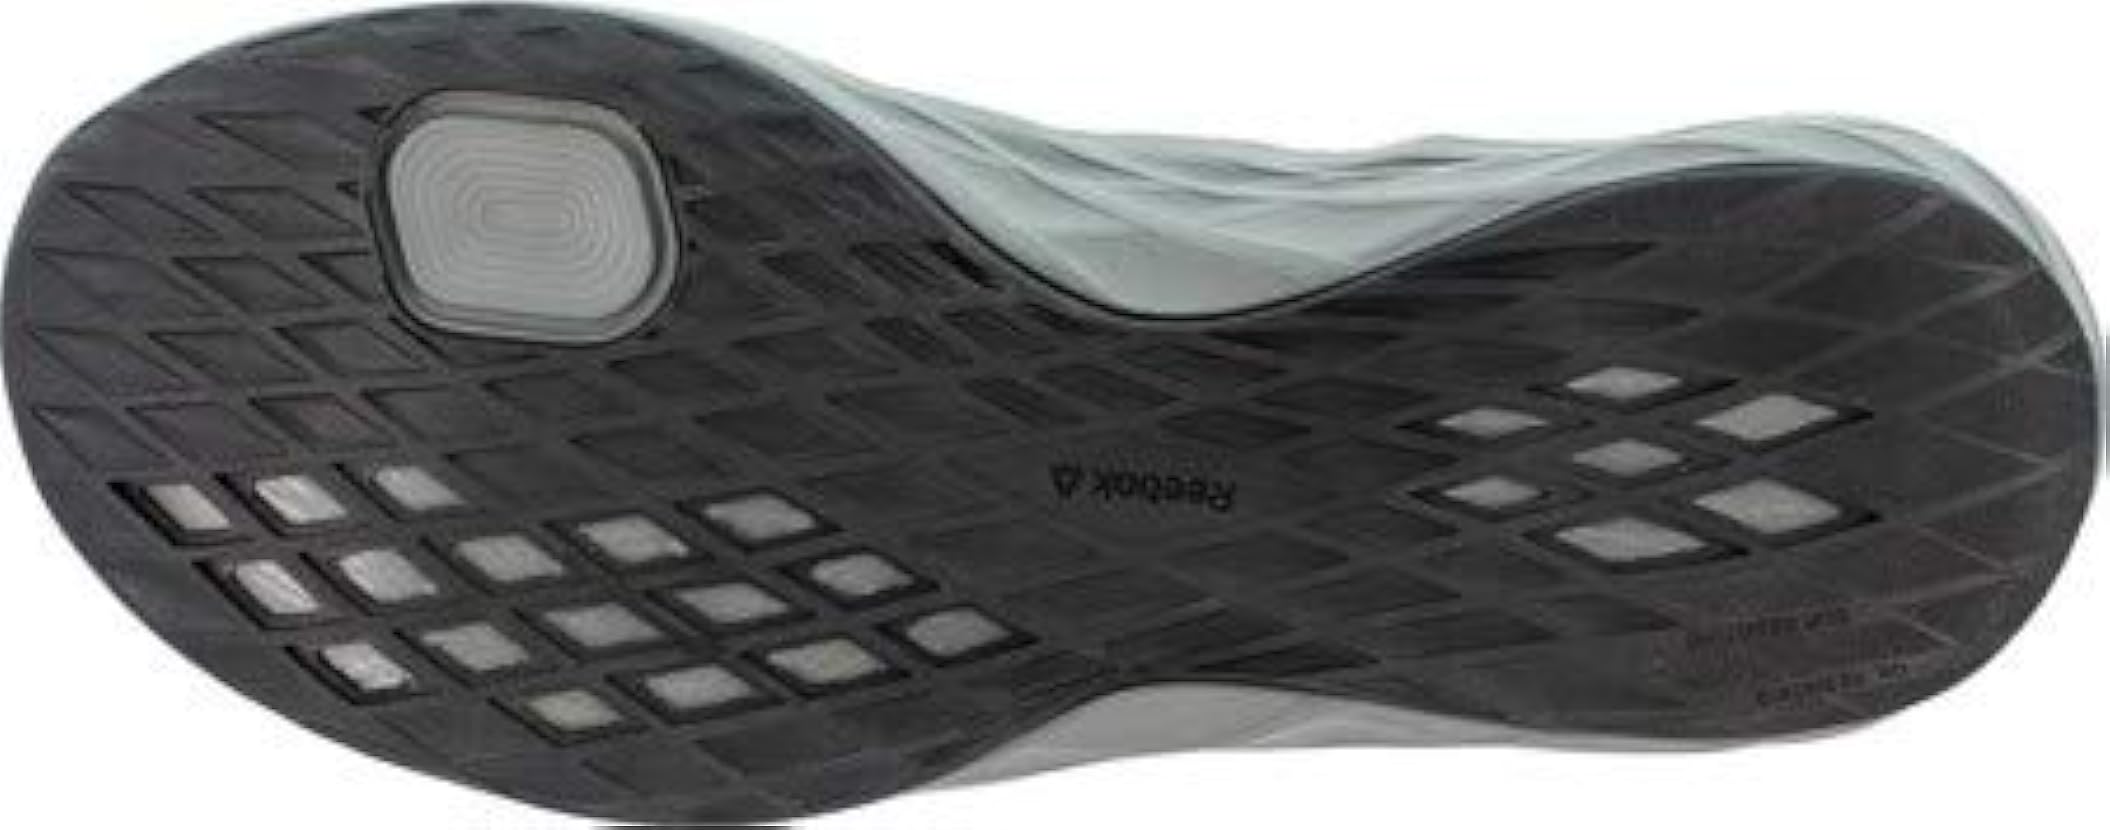 Reebok Astroride ST - Scarpe da lavoro da uomo, colore: Nero/Grigio 403818417